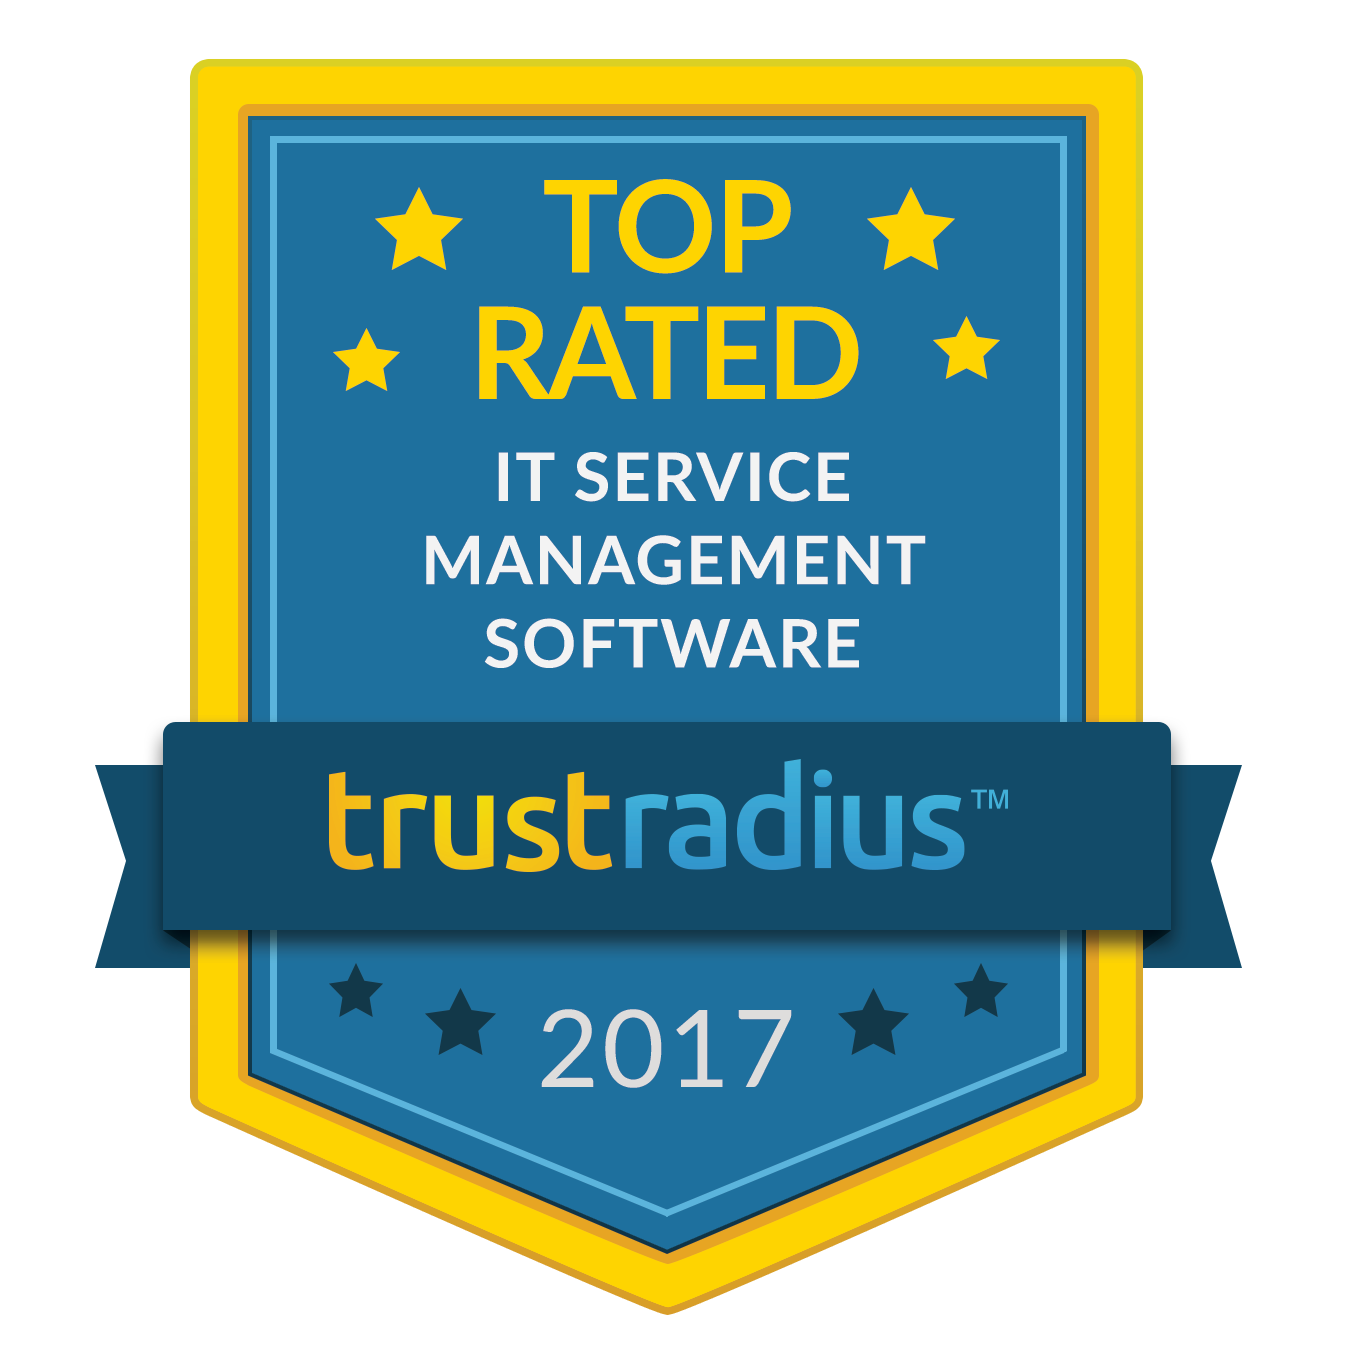 Mejor valoración como software de gestión de servicios de TI de la mano de TrustRadius